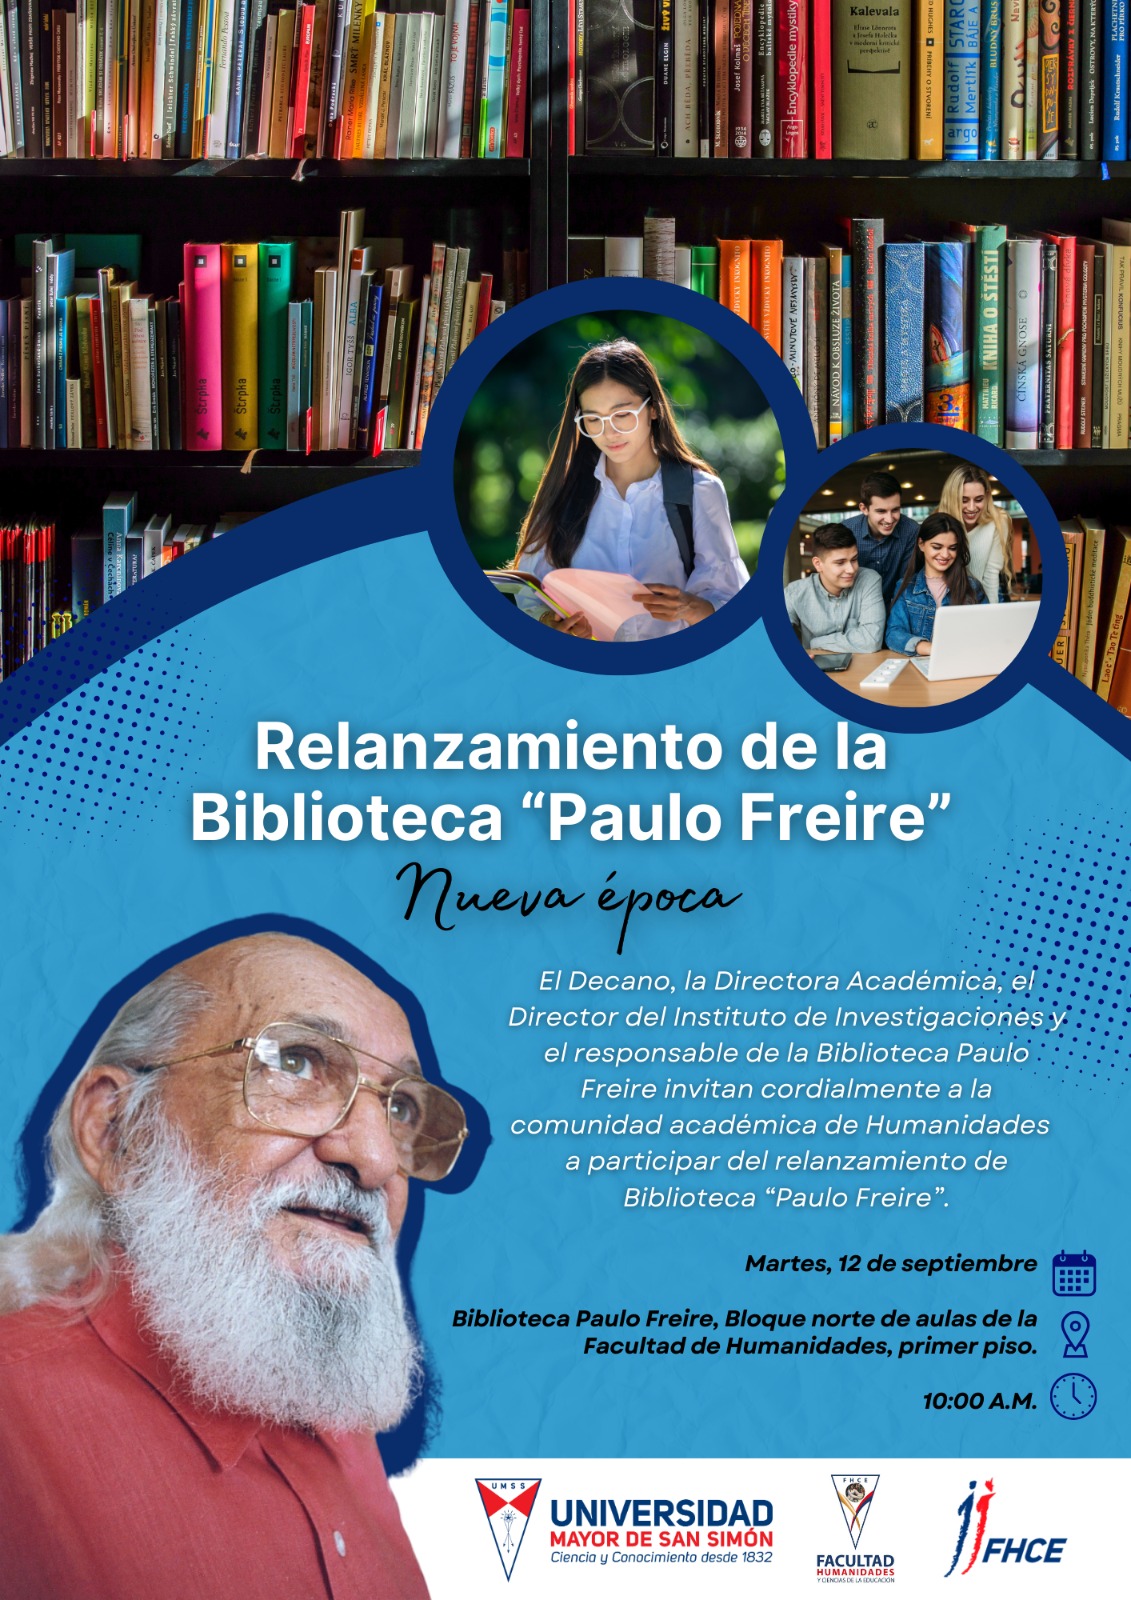 Relanzamiento de la Biblioteca Paulo Freire